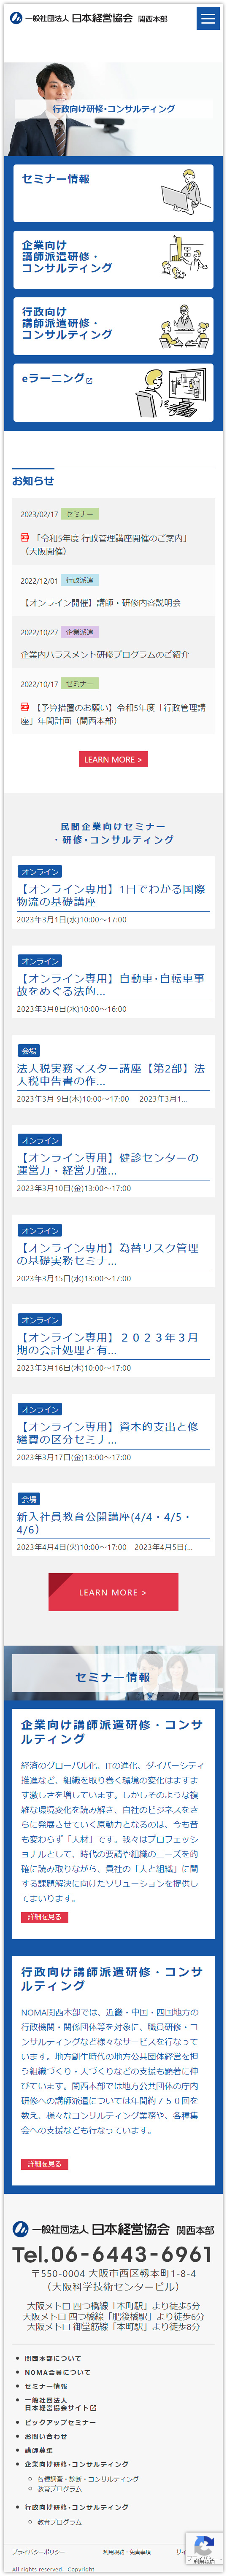 一般社団法人日本経営協会 関西本部スマートフォンホームページ